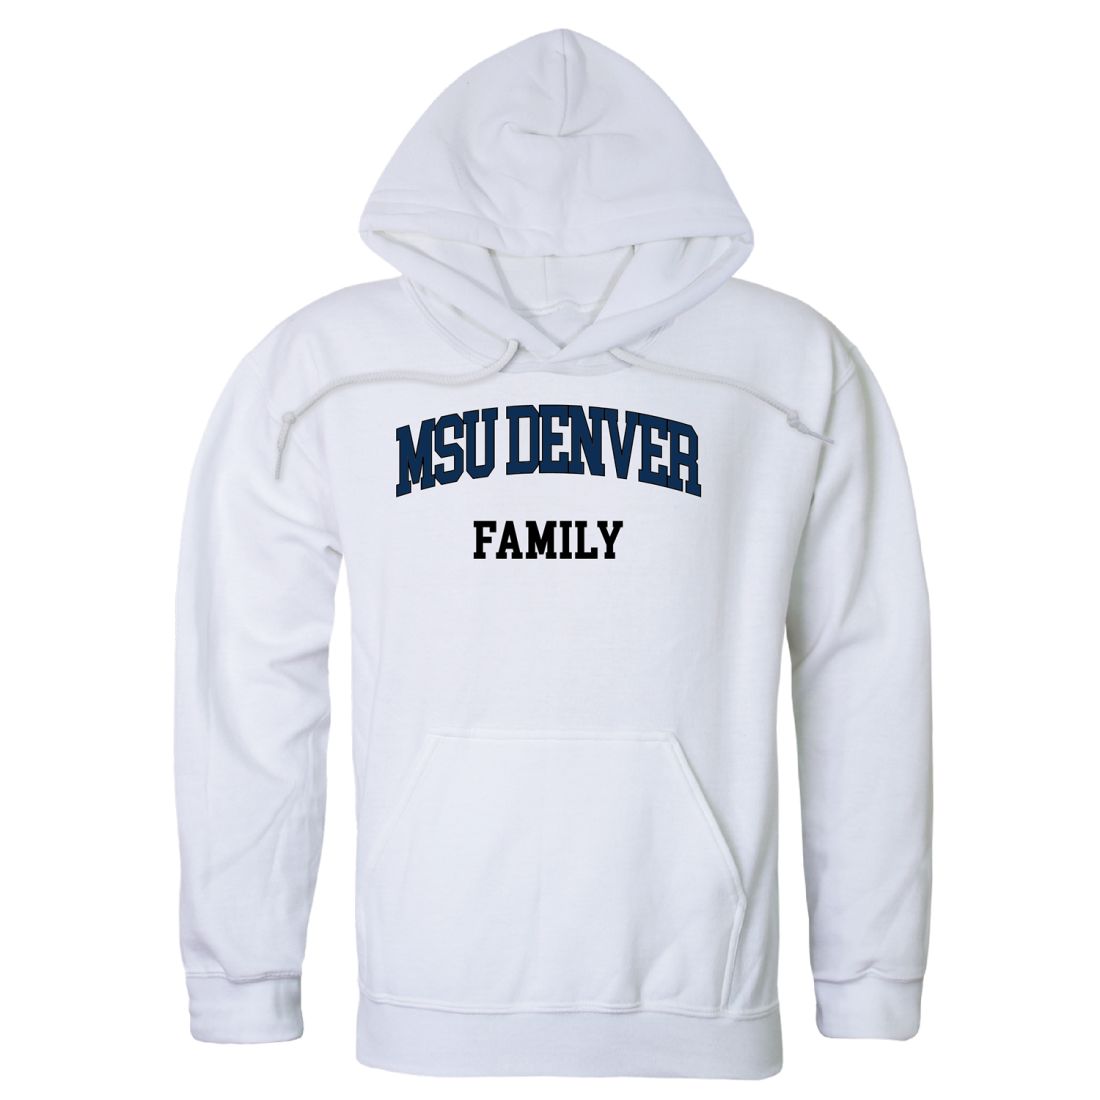 Metropolitan State University of Denver Roadrunners Family Hoodie Sweatshirts